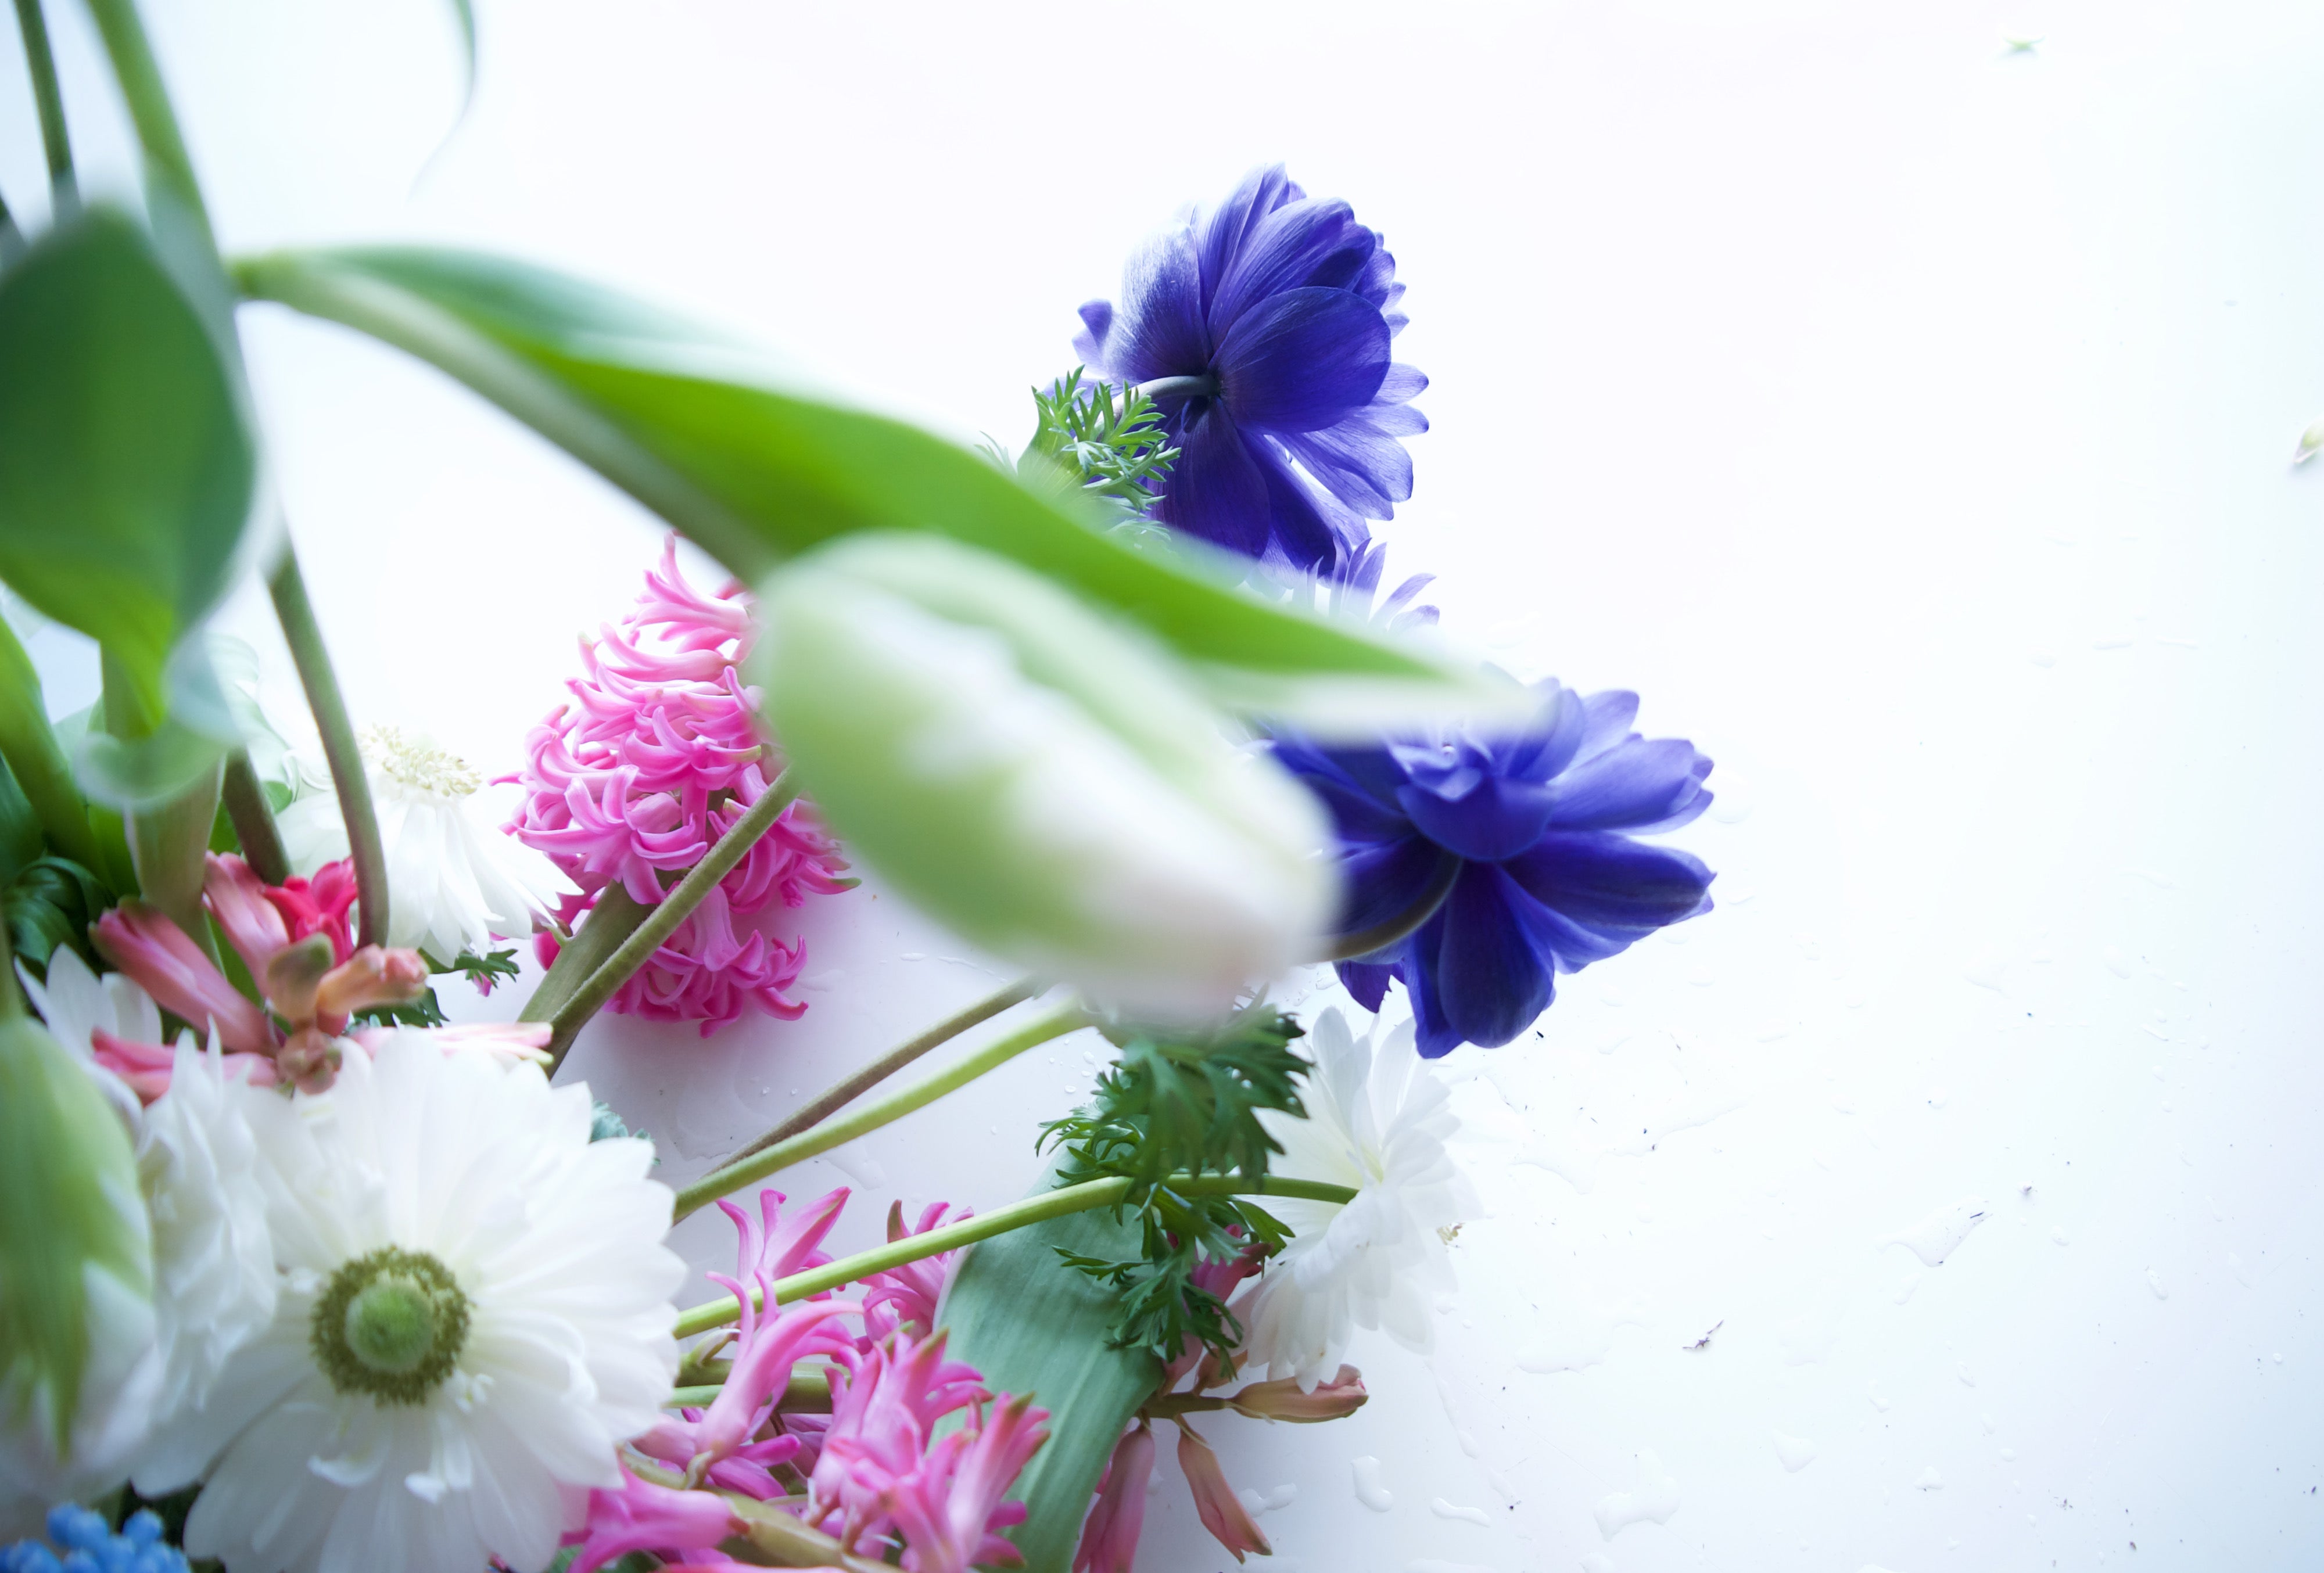 Ranunculus, anemones, hyacinth, tulips - seasonal flowers. Portland flower delivery.